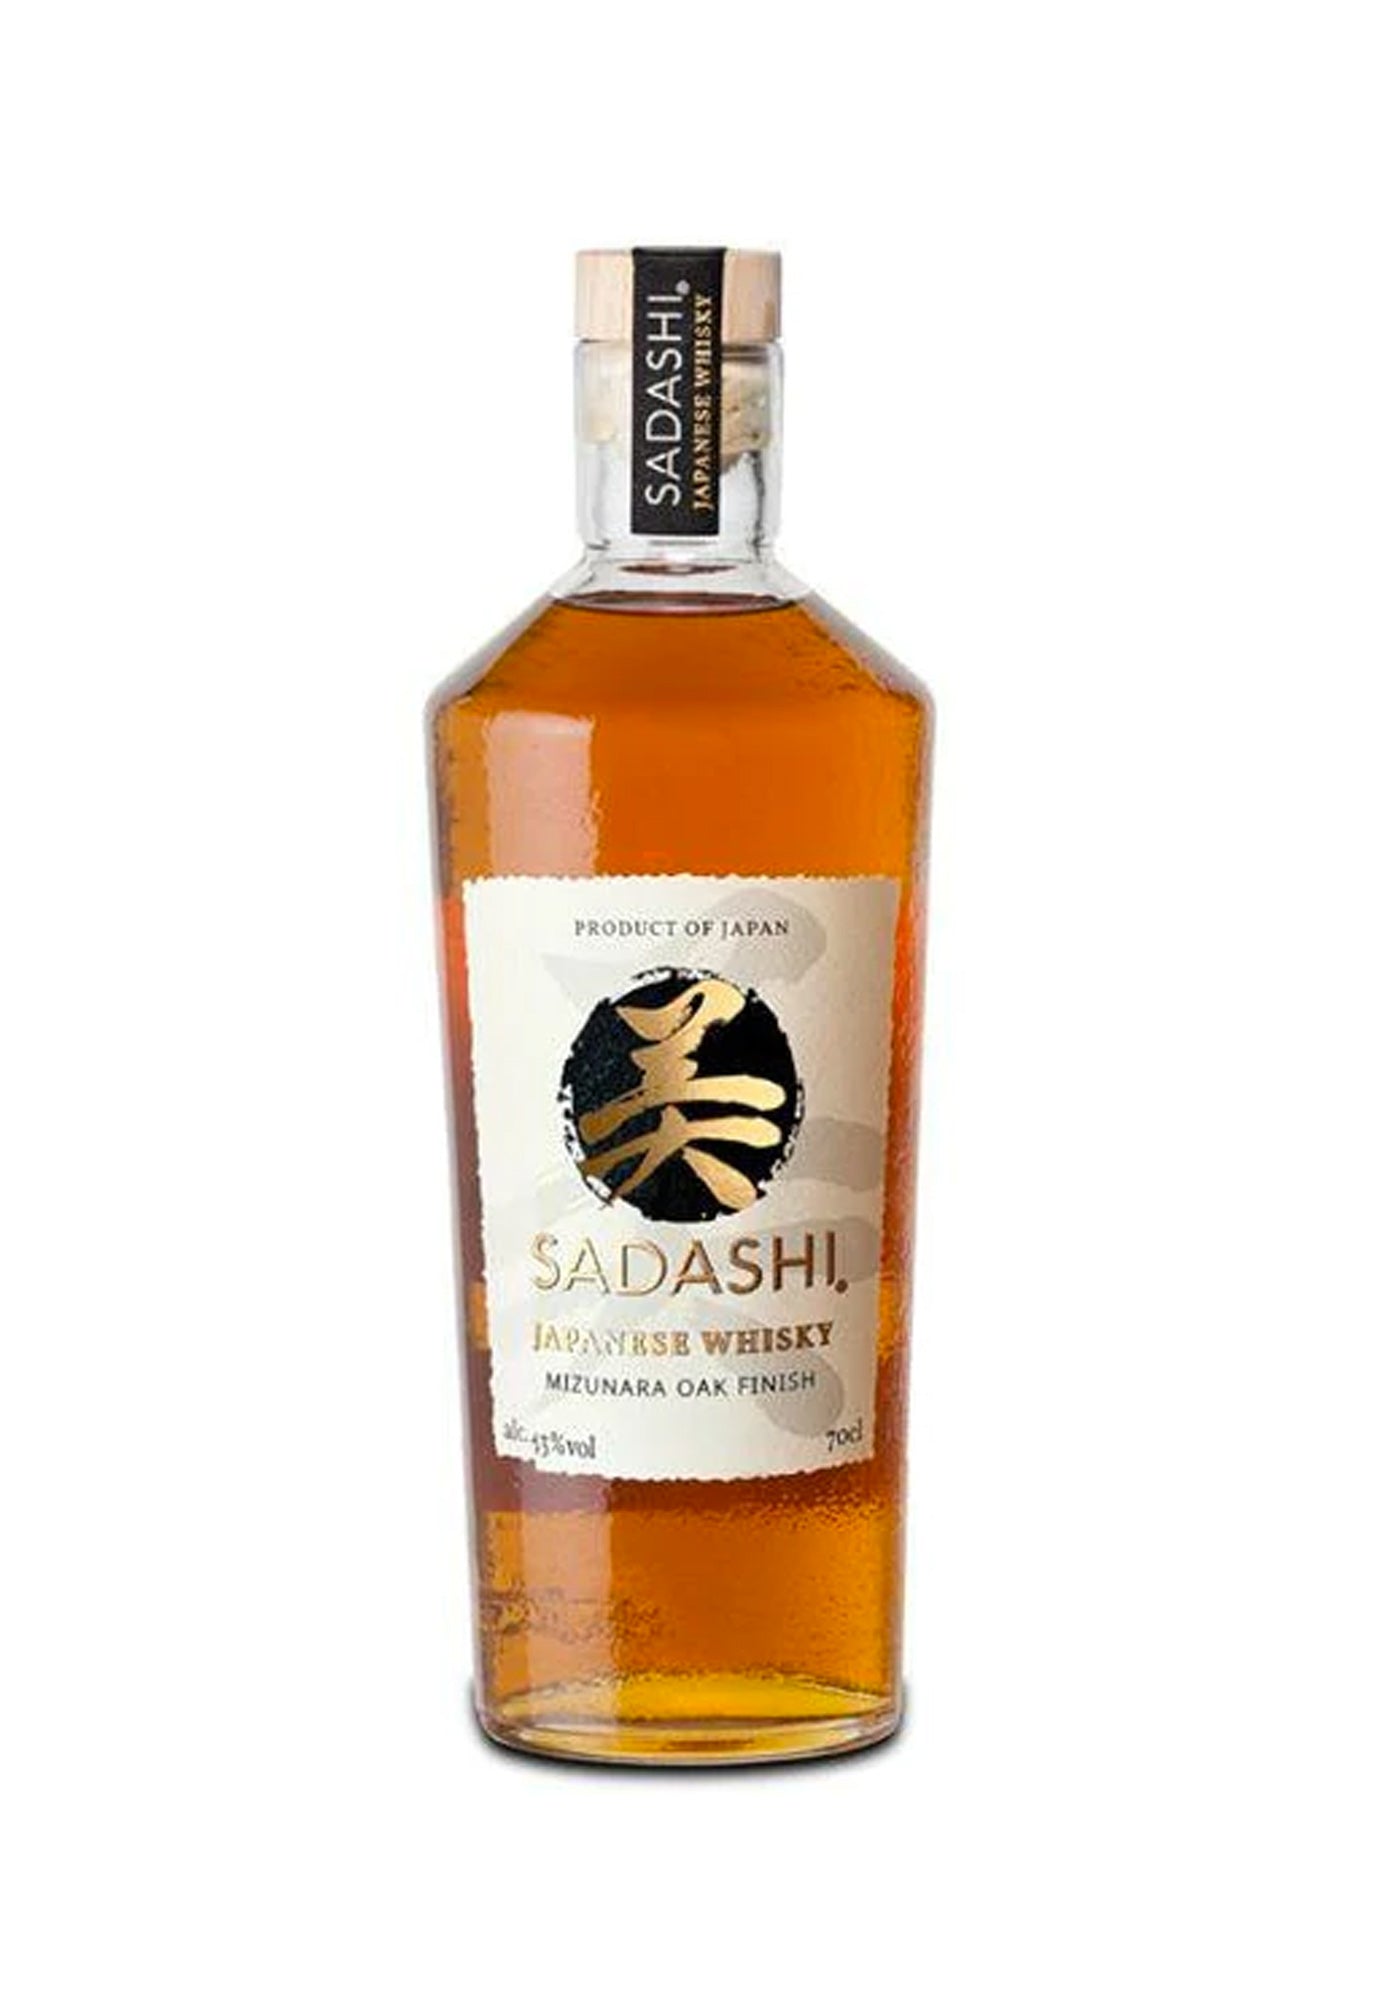 Sadashi Blended Whisky